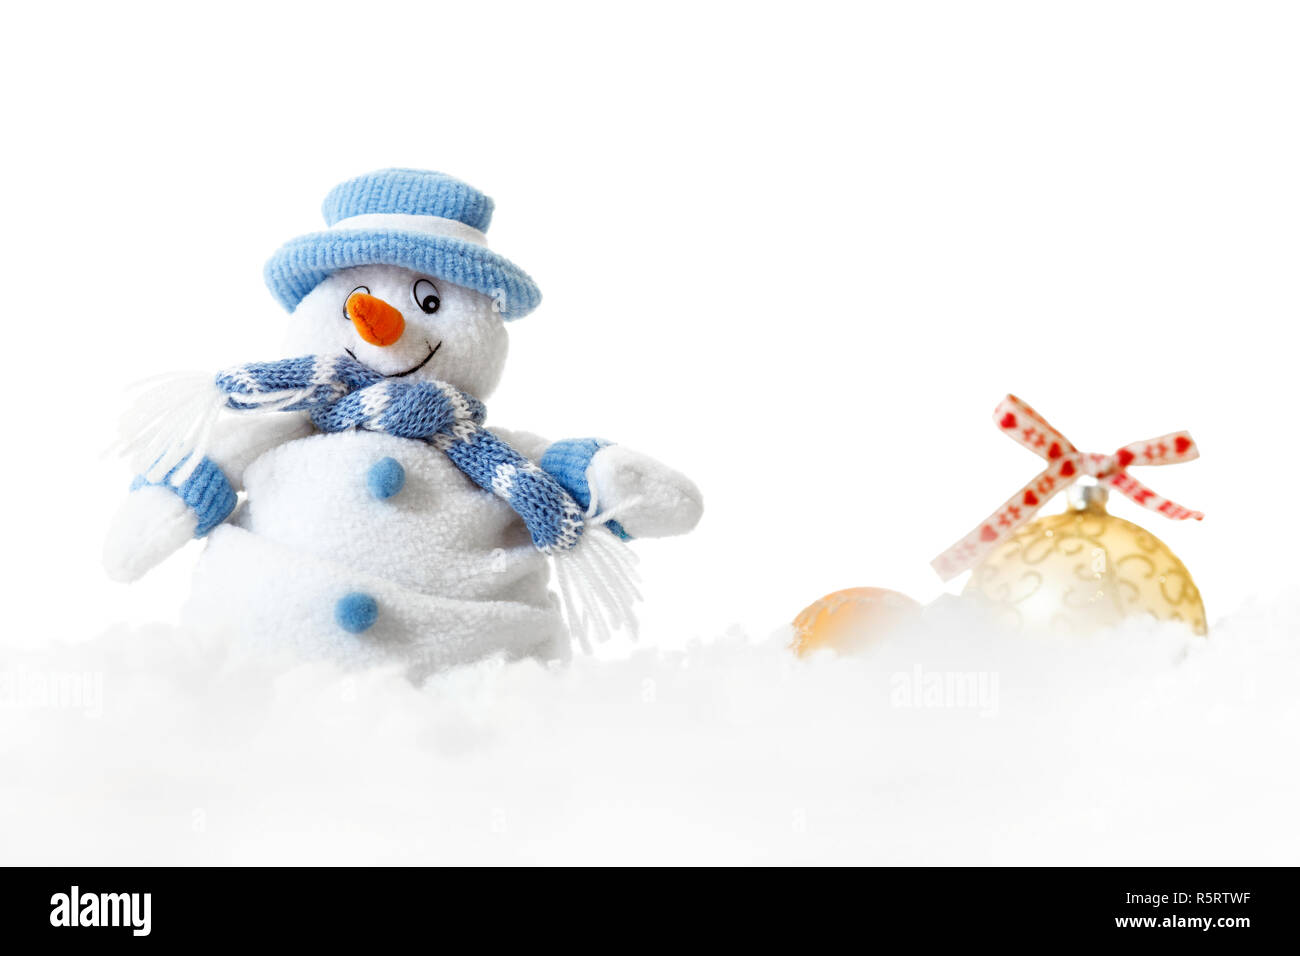 Noël isolés professionnels snowman wearing blue bonnet et écharpe avec boules décoratives blanc sur fond clair, joyeux Noël décorations mariage Banque D'Images